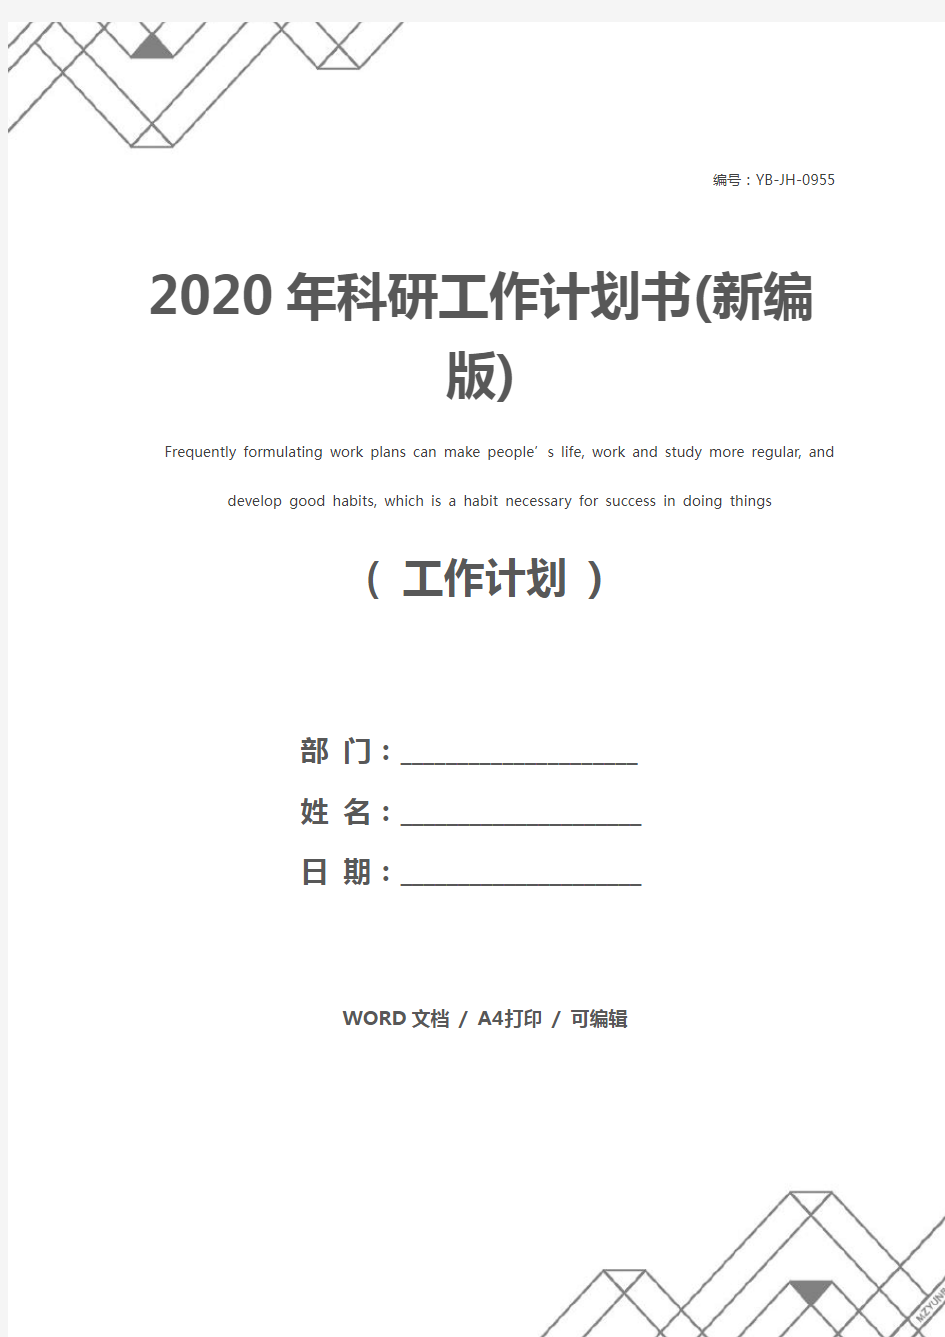 2020年科研工作计划书(新编版)